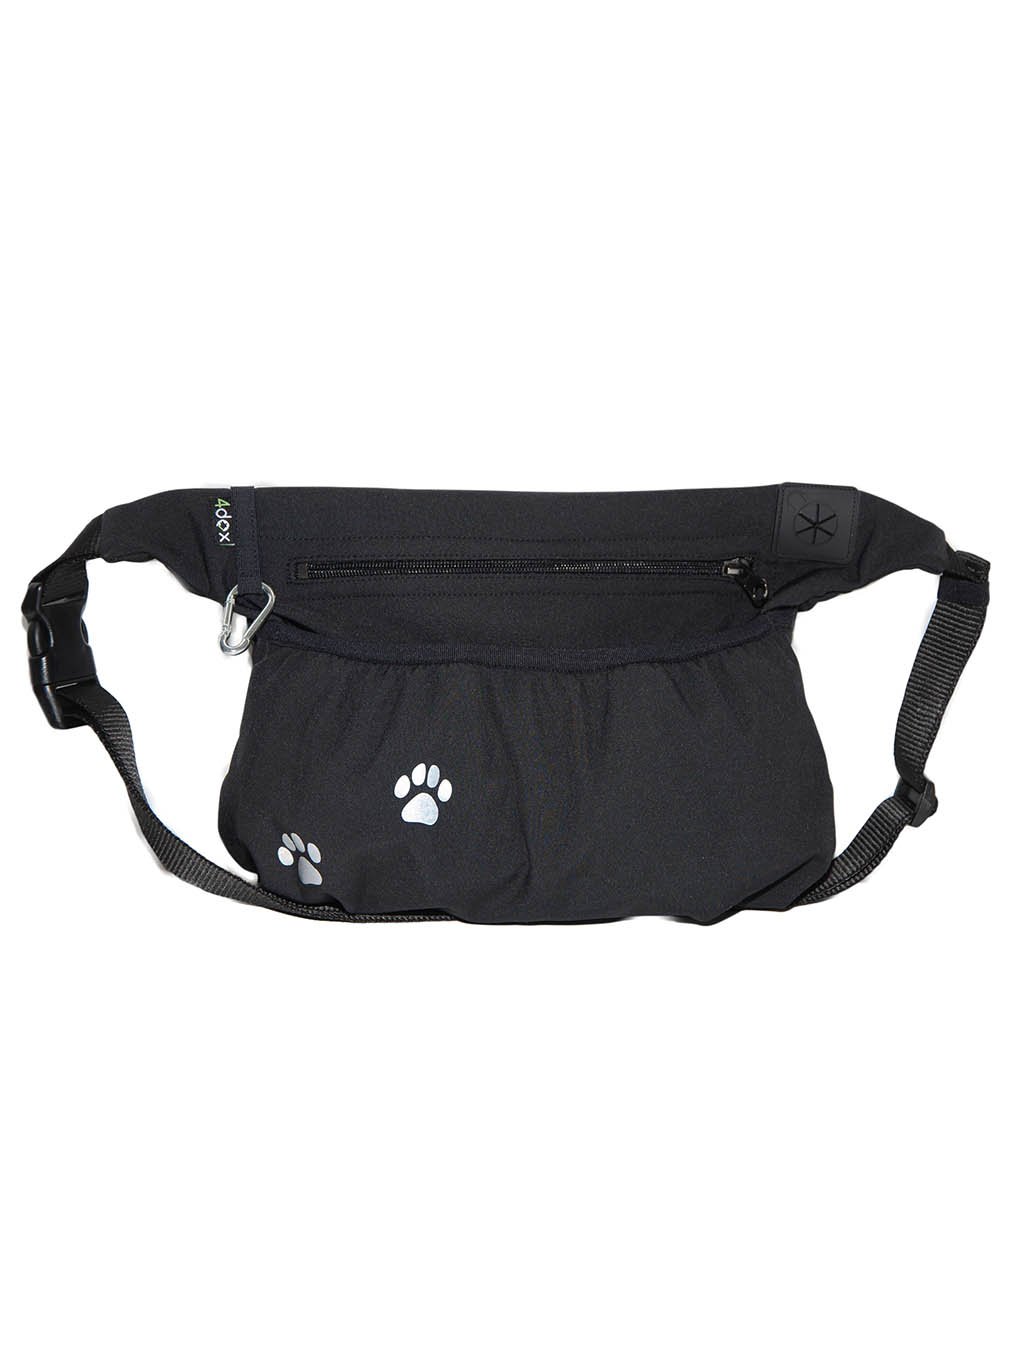 Dog training treat pouch XL black REFLEXIVE PAW